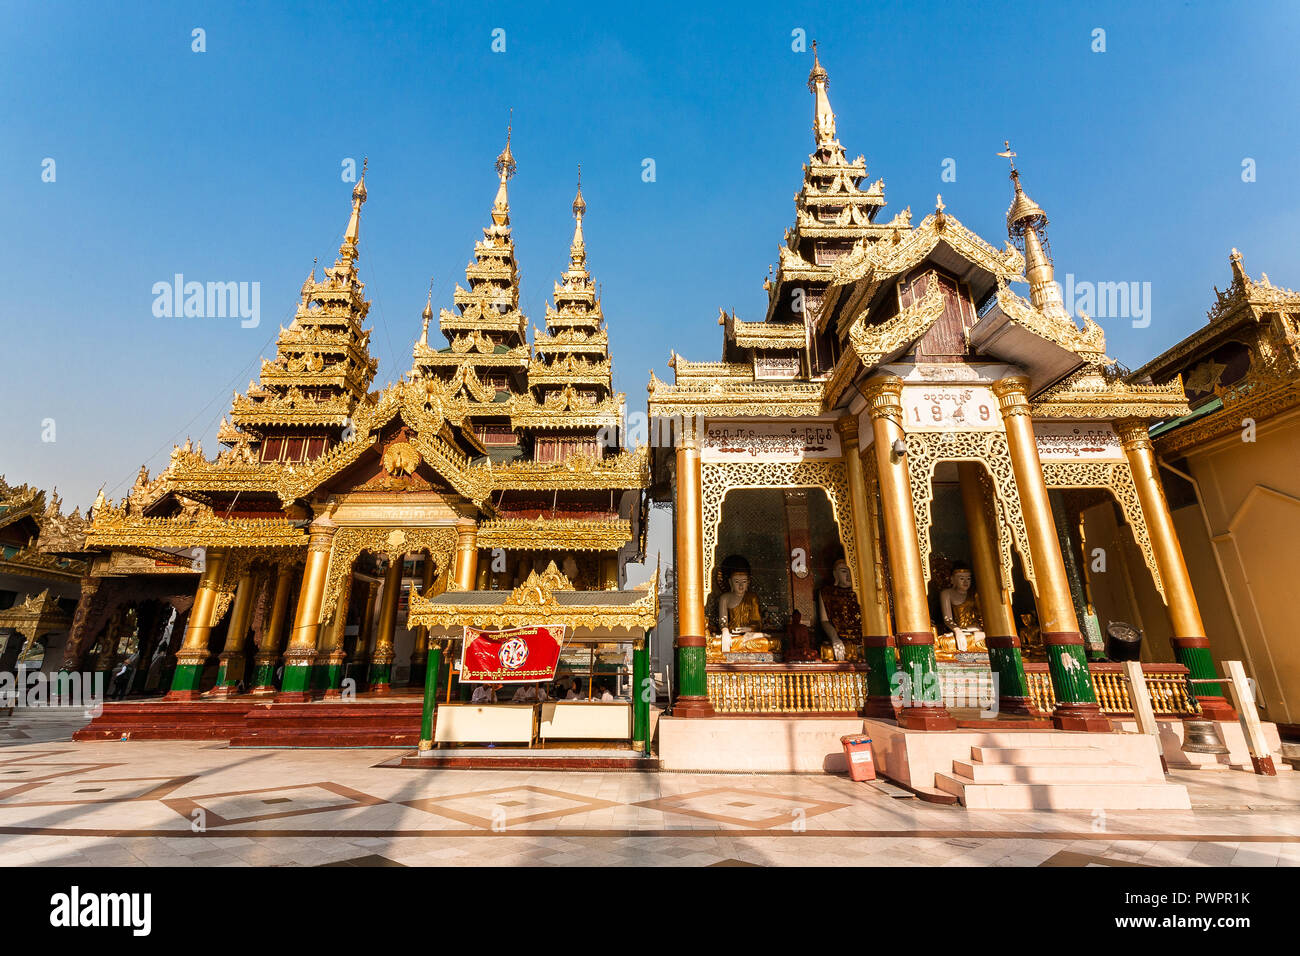 Shwedagon pagoda, Yangon, Myanmar Stock Photo